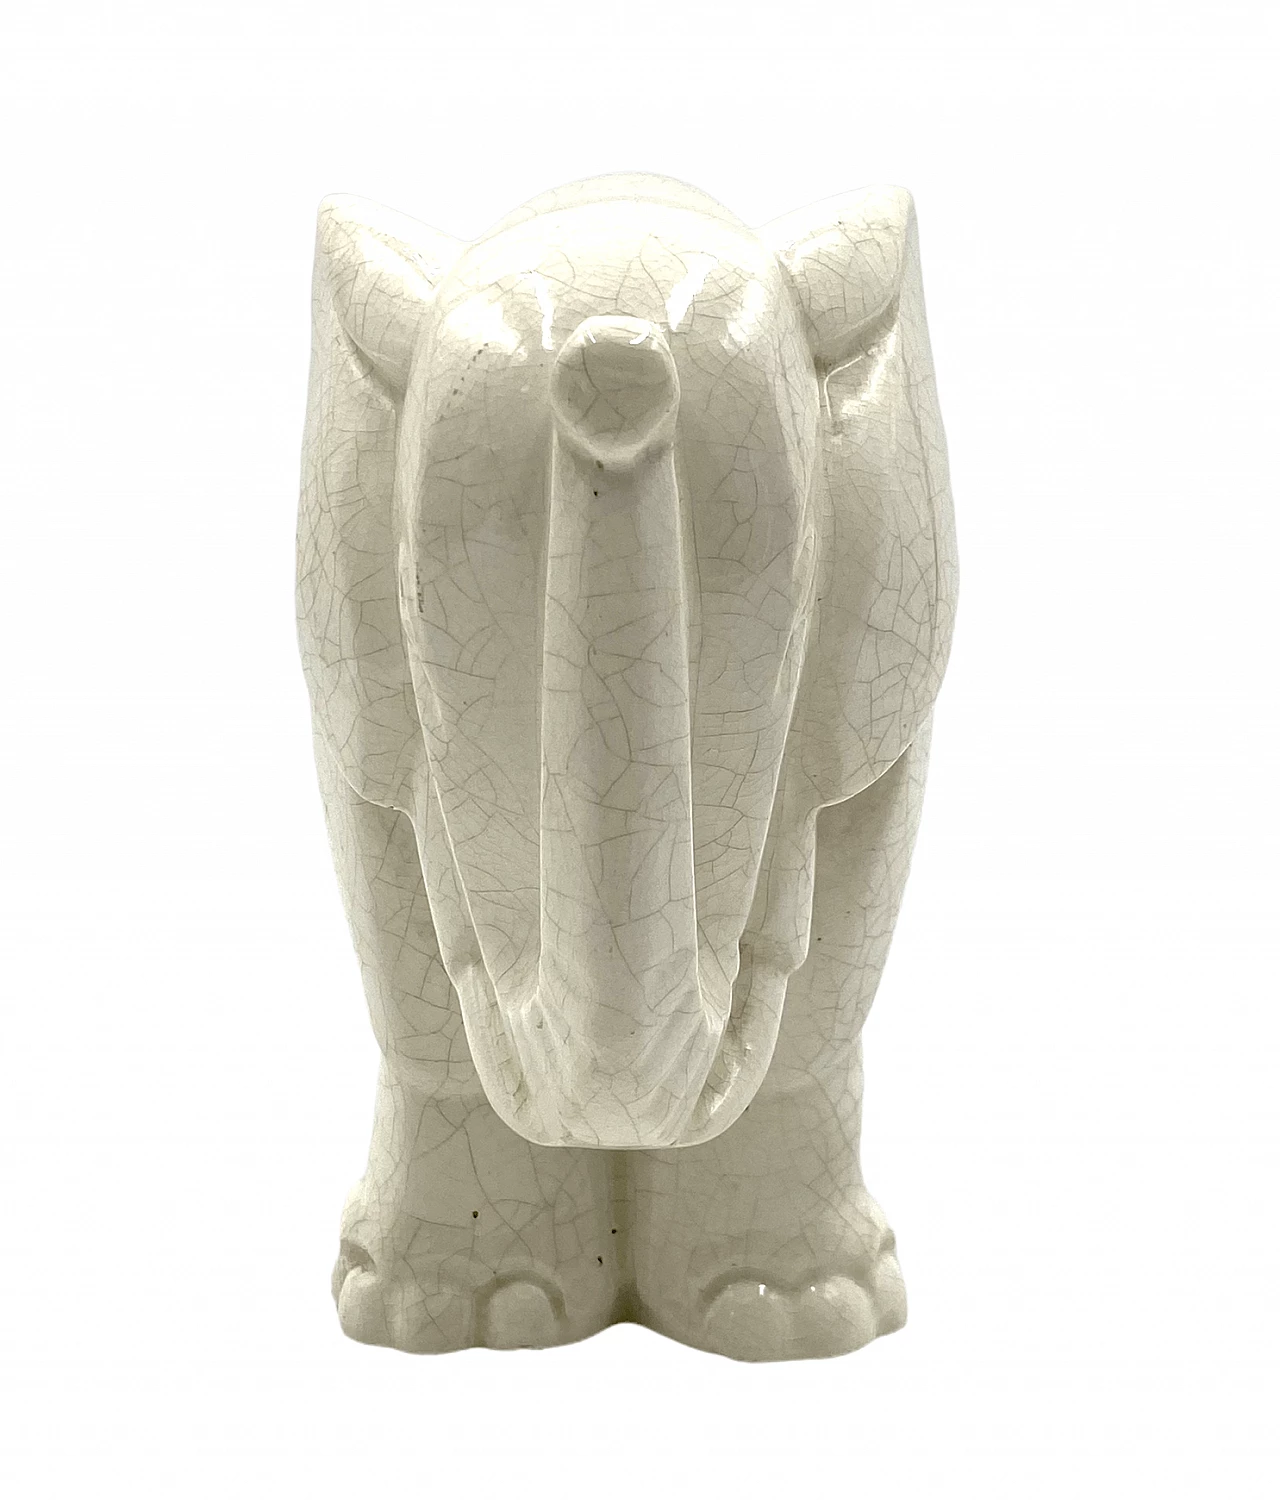 Elephant sculpture in craquelé porcelain by Charles Lemanceau, 1930s 10